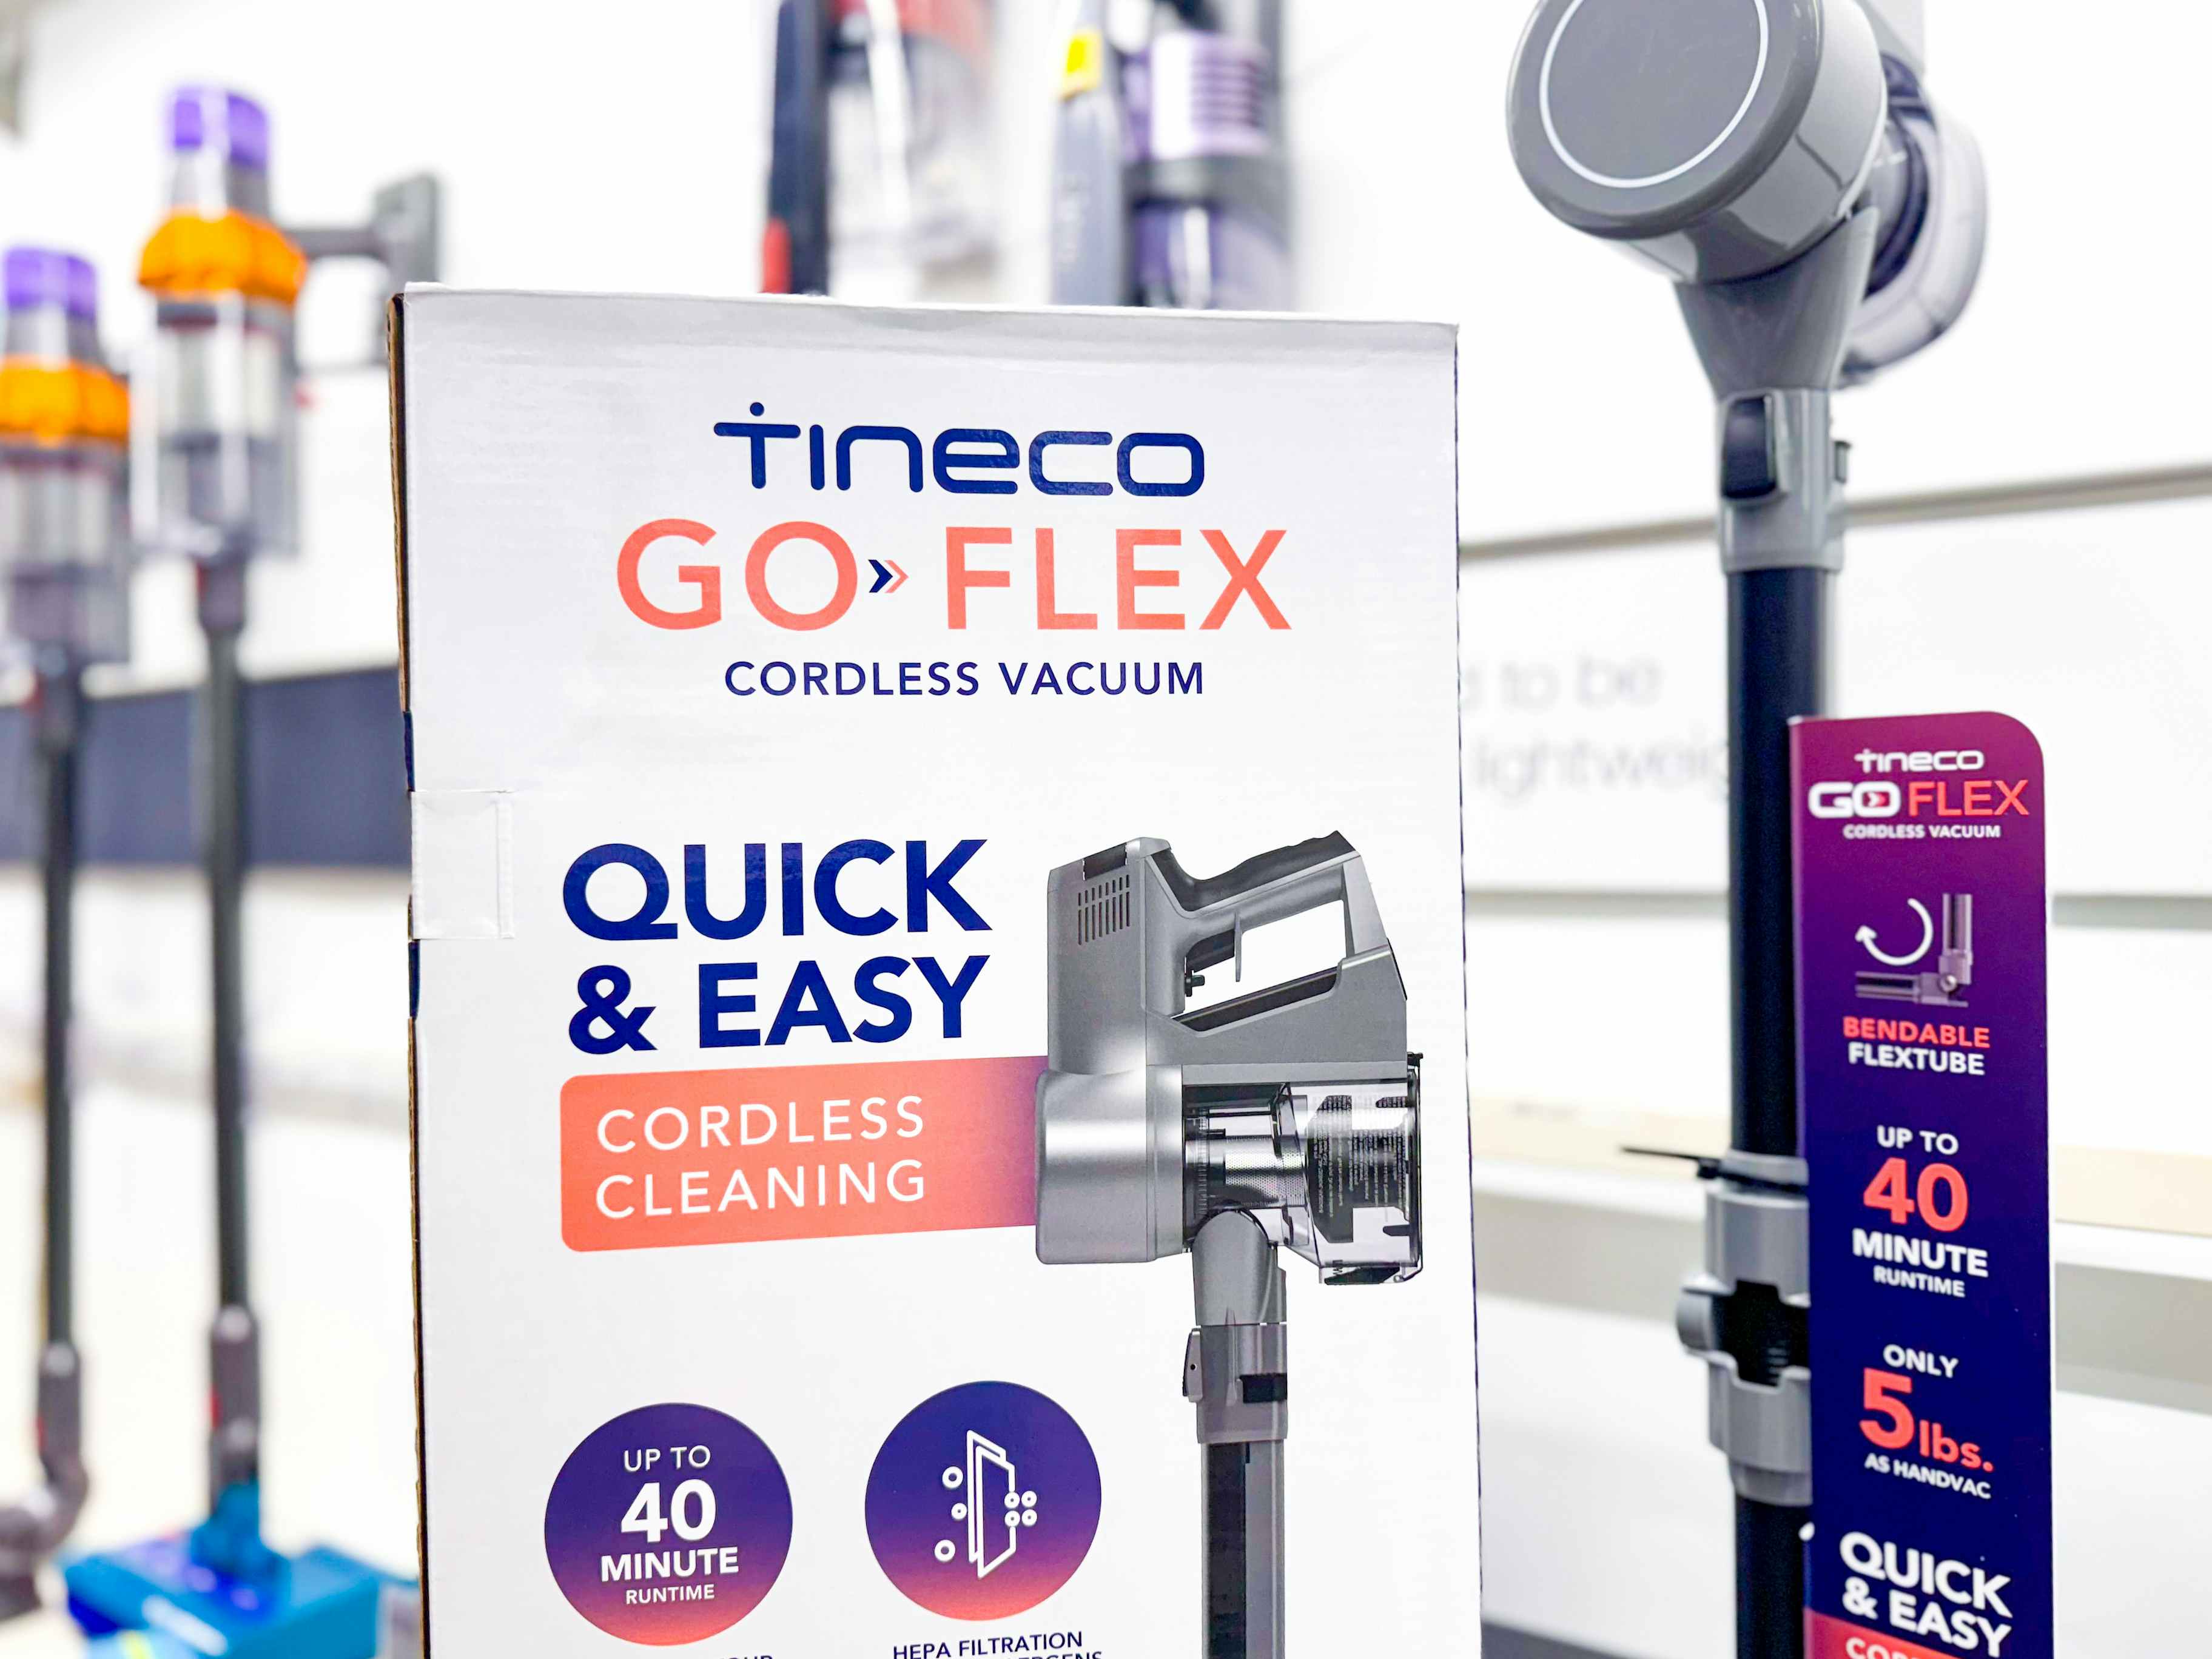 tineco-go-flex-cordless-vacuum-target2